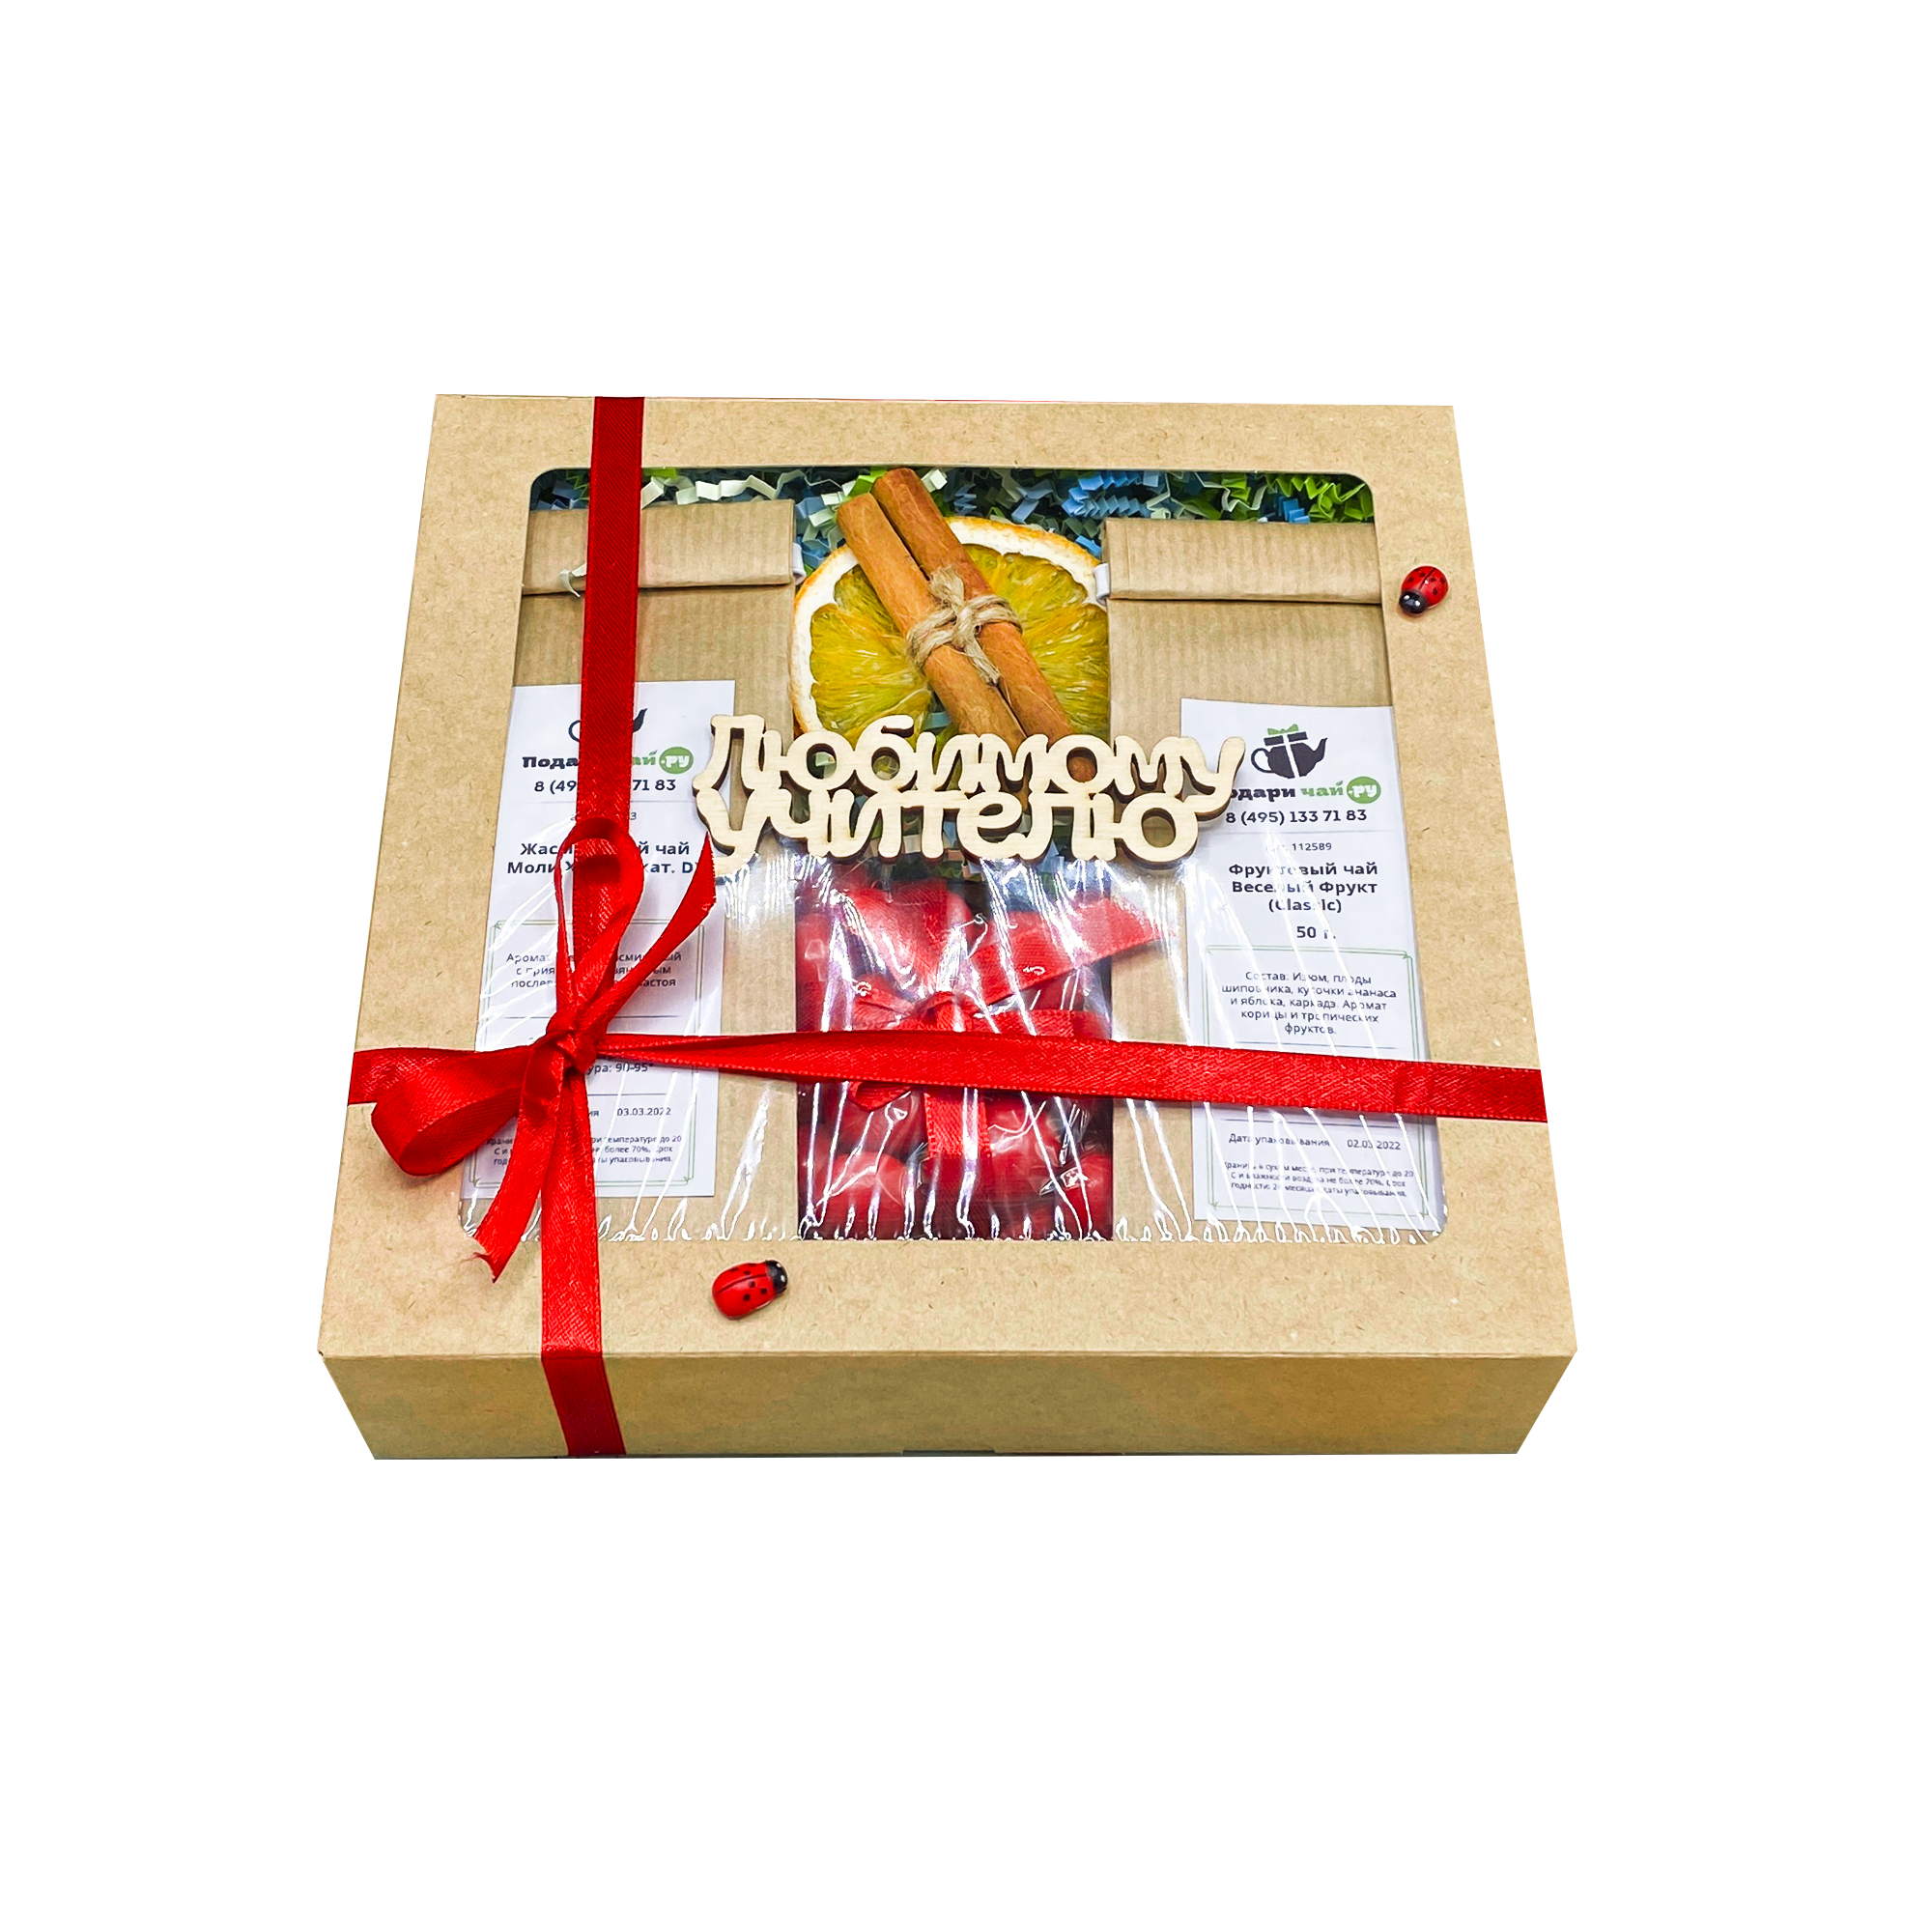 фото Подарочный набор из 2-х видов чая "спелая вишня" с открыткой любимому учителю, 250гр подари чай.ру